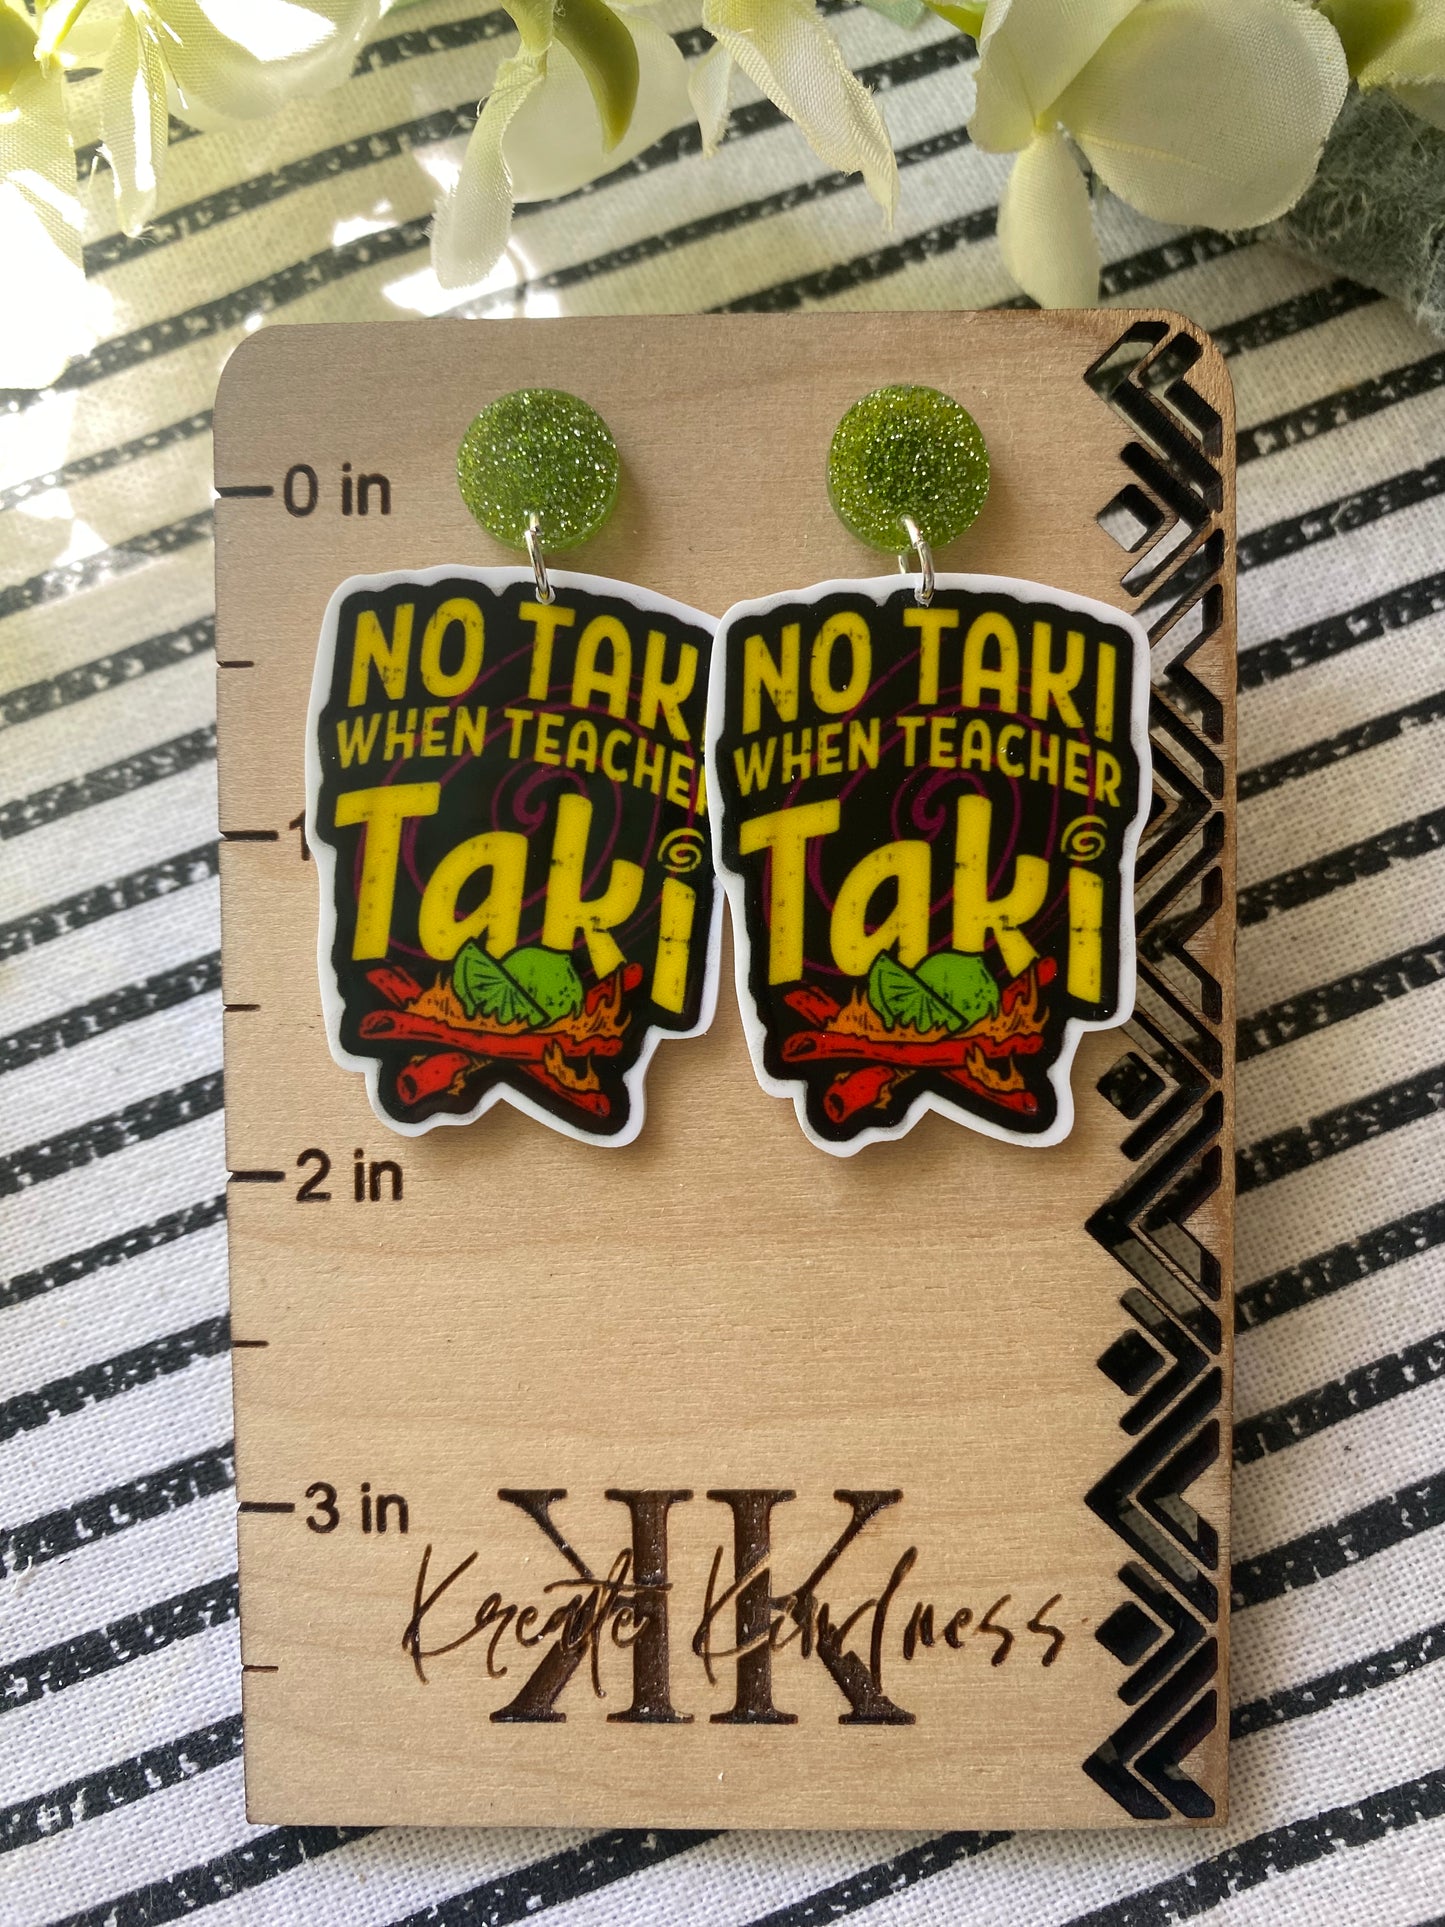 No Taki when TEACHER Taki